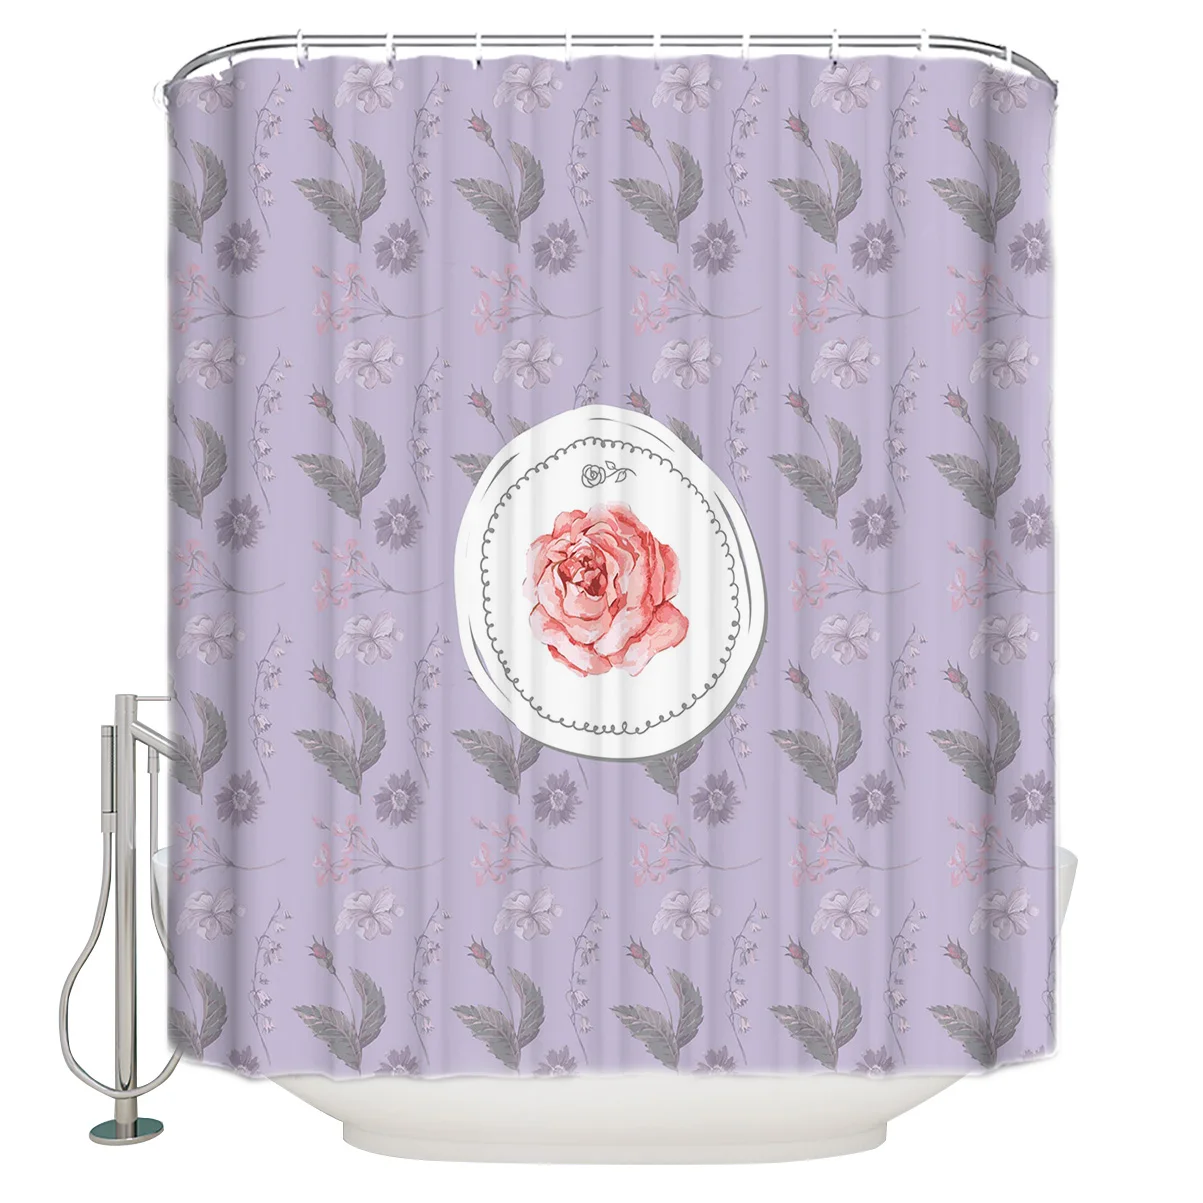 

Водонепроницаемая занавеска для душа, декоративная круглая тканевая шторка для ванной комнаты с цветами розы, акварелью